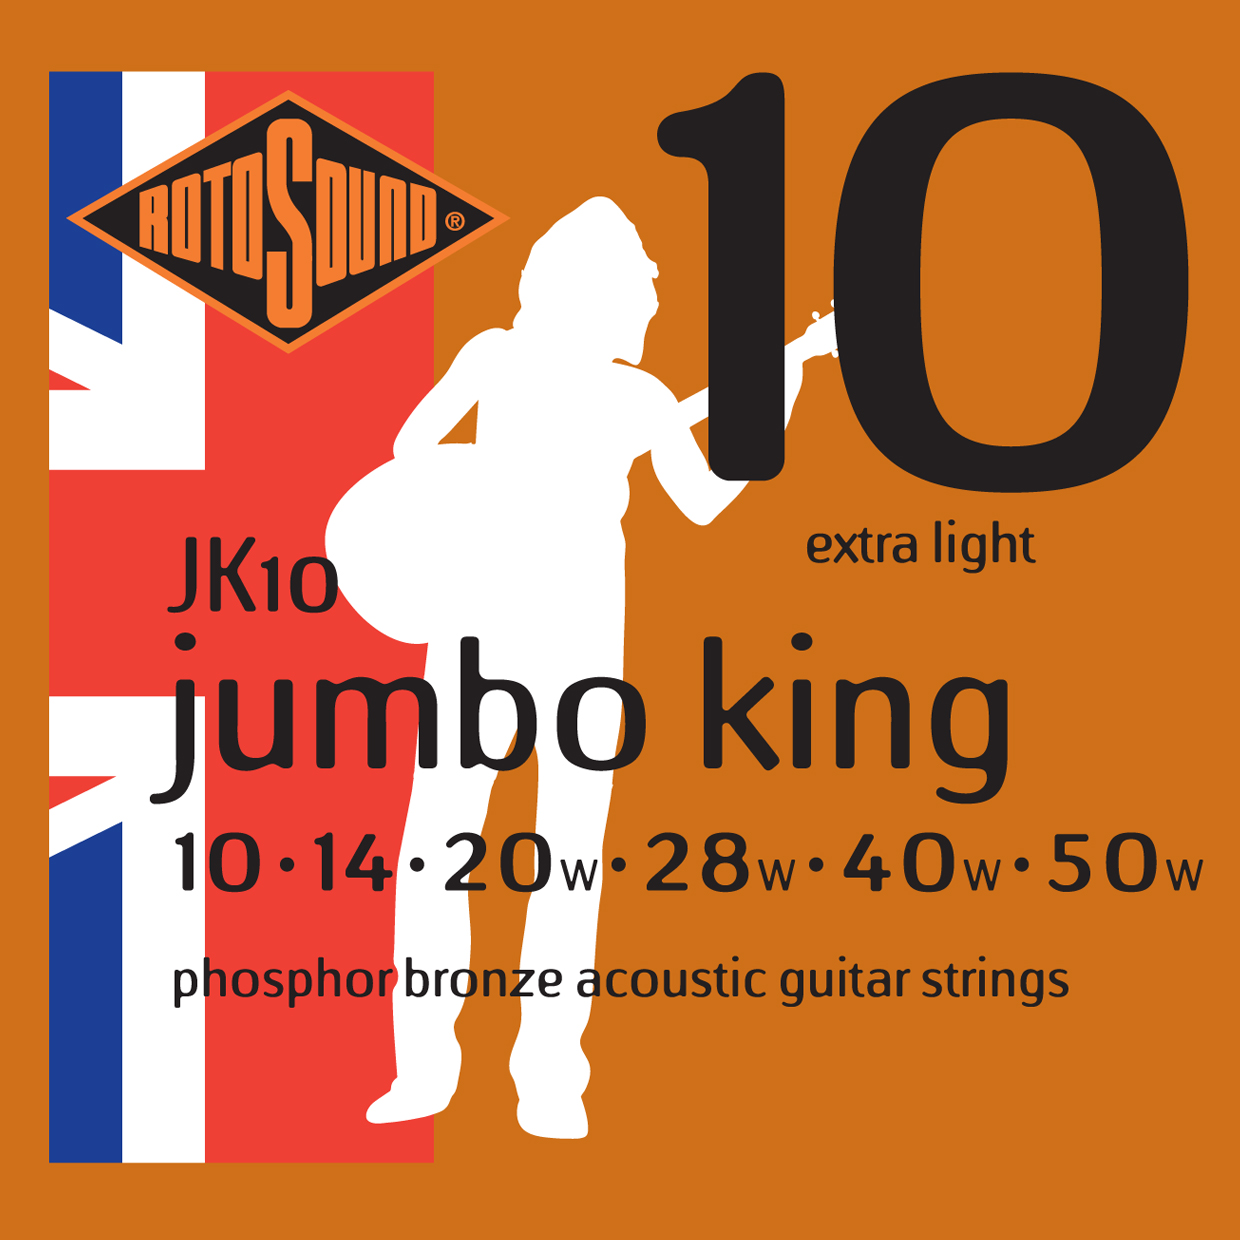 ROTOSOUND JK10 STRINGS PHOSPHOR BRONZE струны для акустической гитары, фосфорная бронза, 10-50